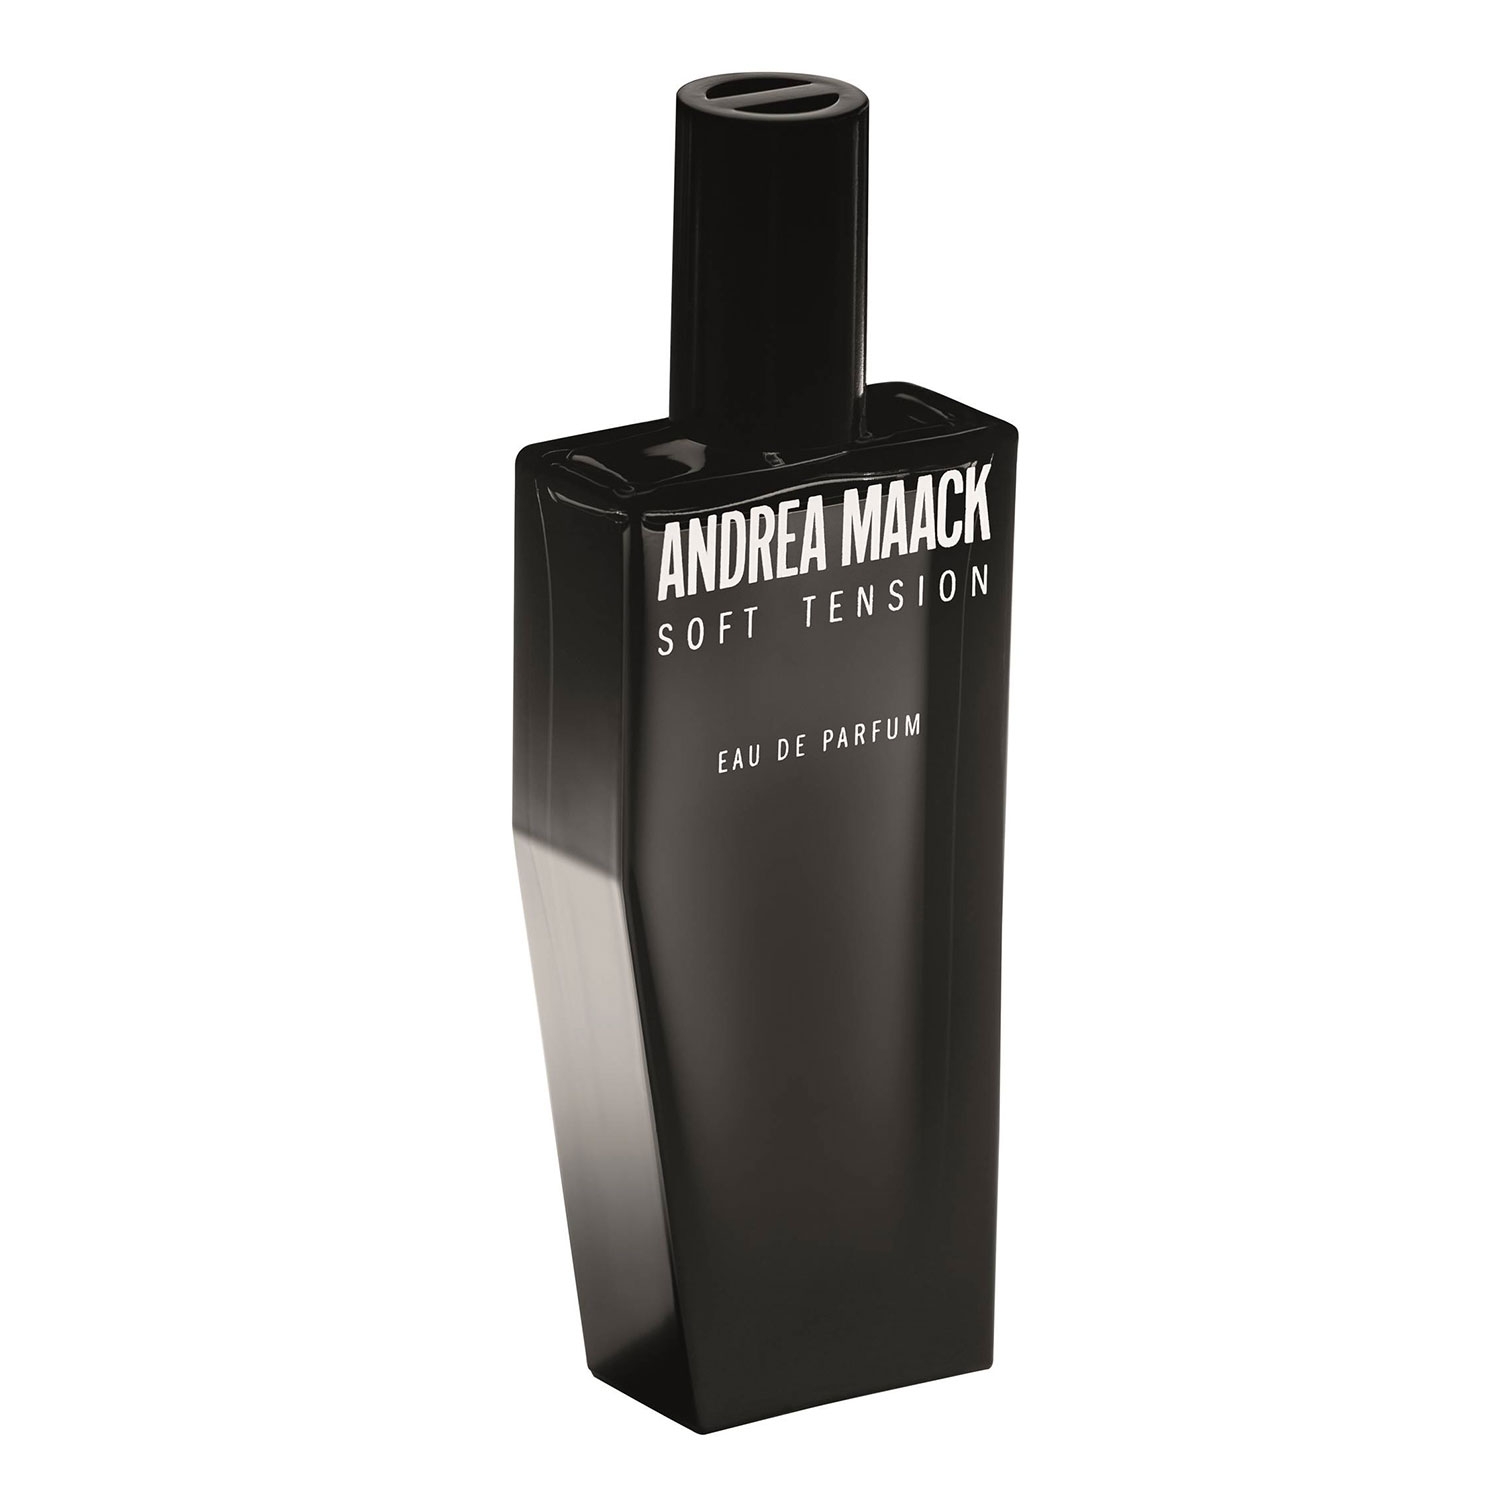 Produktbild von ANDREA MAACK - SOFT TENSION Eau de Parfum